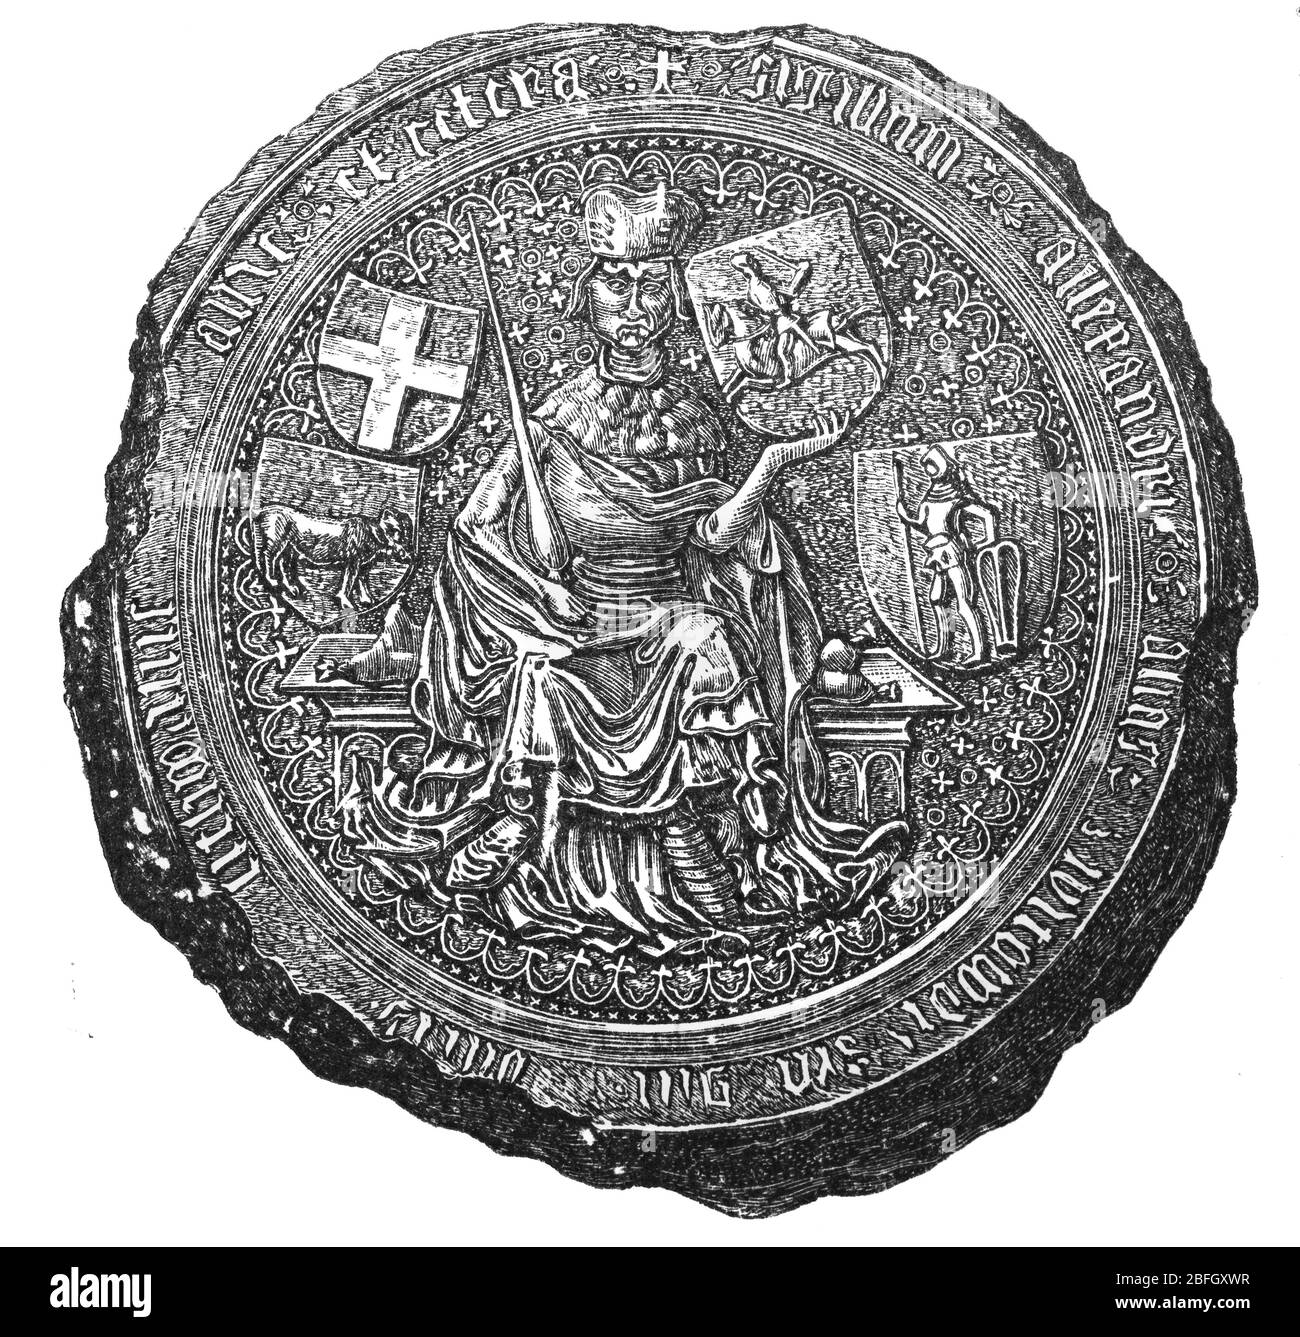 Sigillo di Vytautas il Grande, Granduca di Lituania, 15 ° secolo, illustrazione da libro datato 1916 Foto Stock